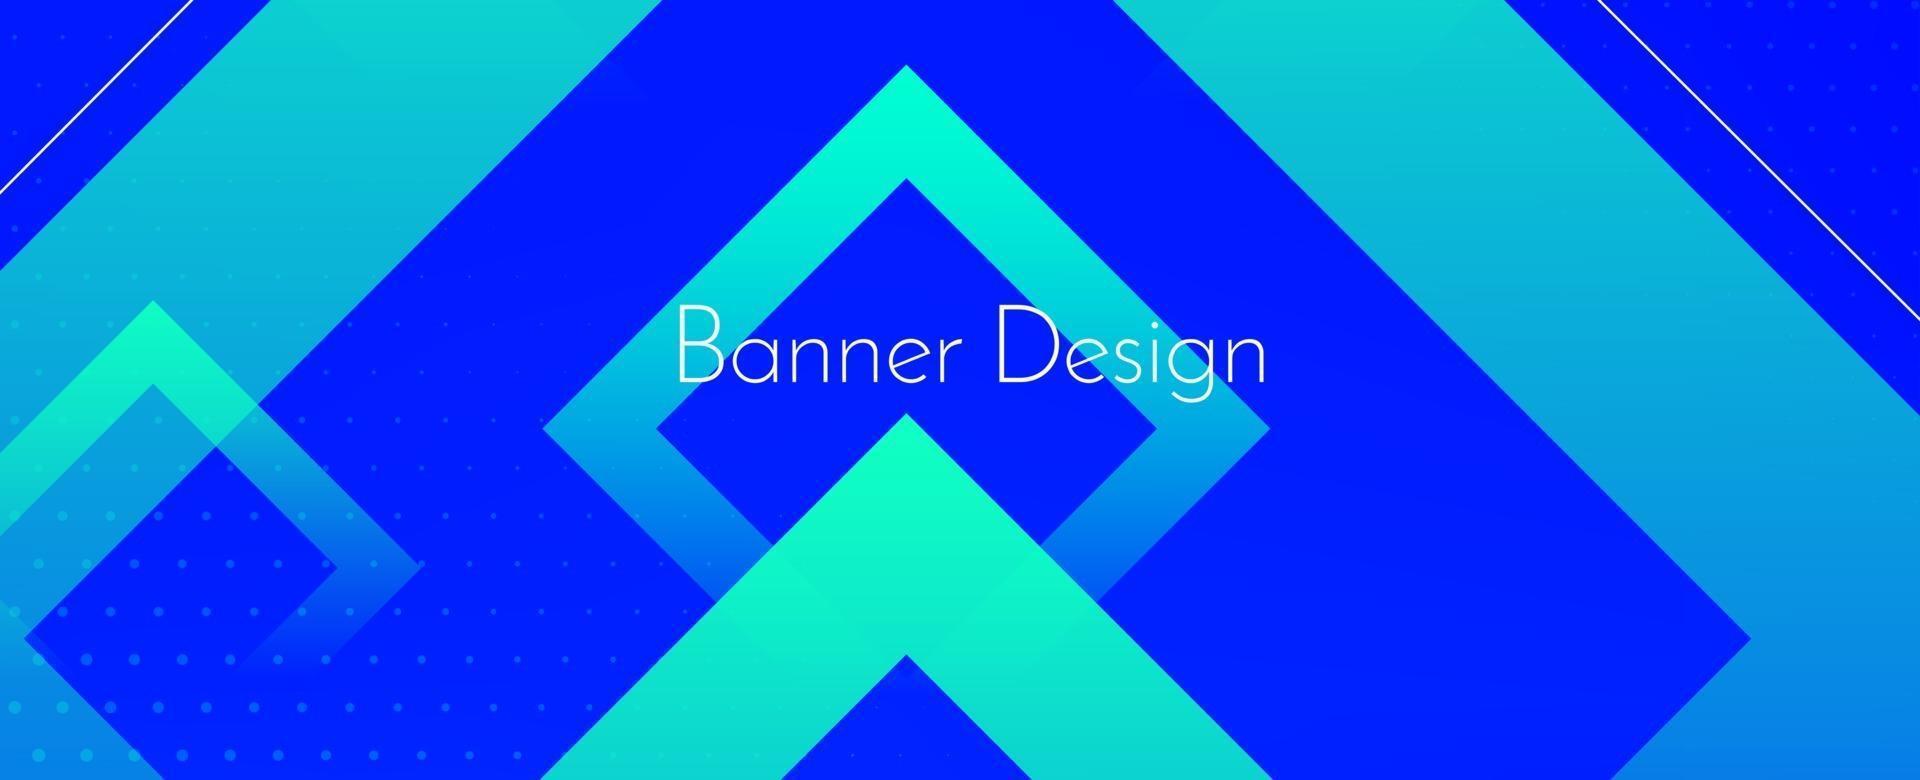 fond de conception abstraite géométrique bleu décoratif bannière moderne vecteur